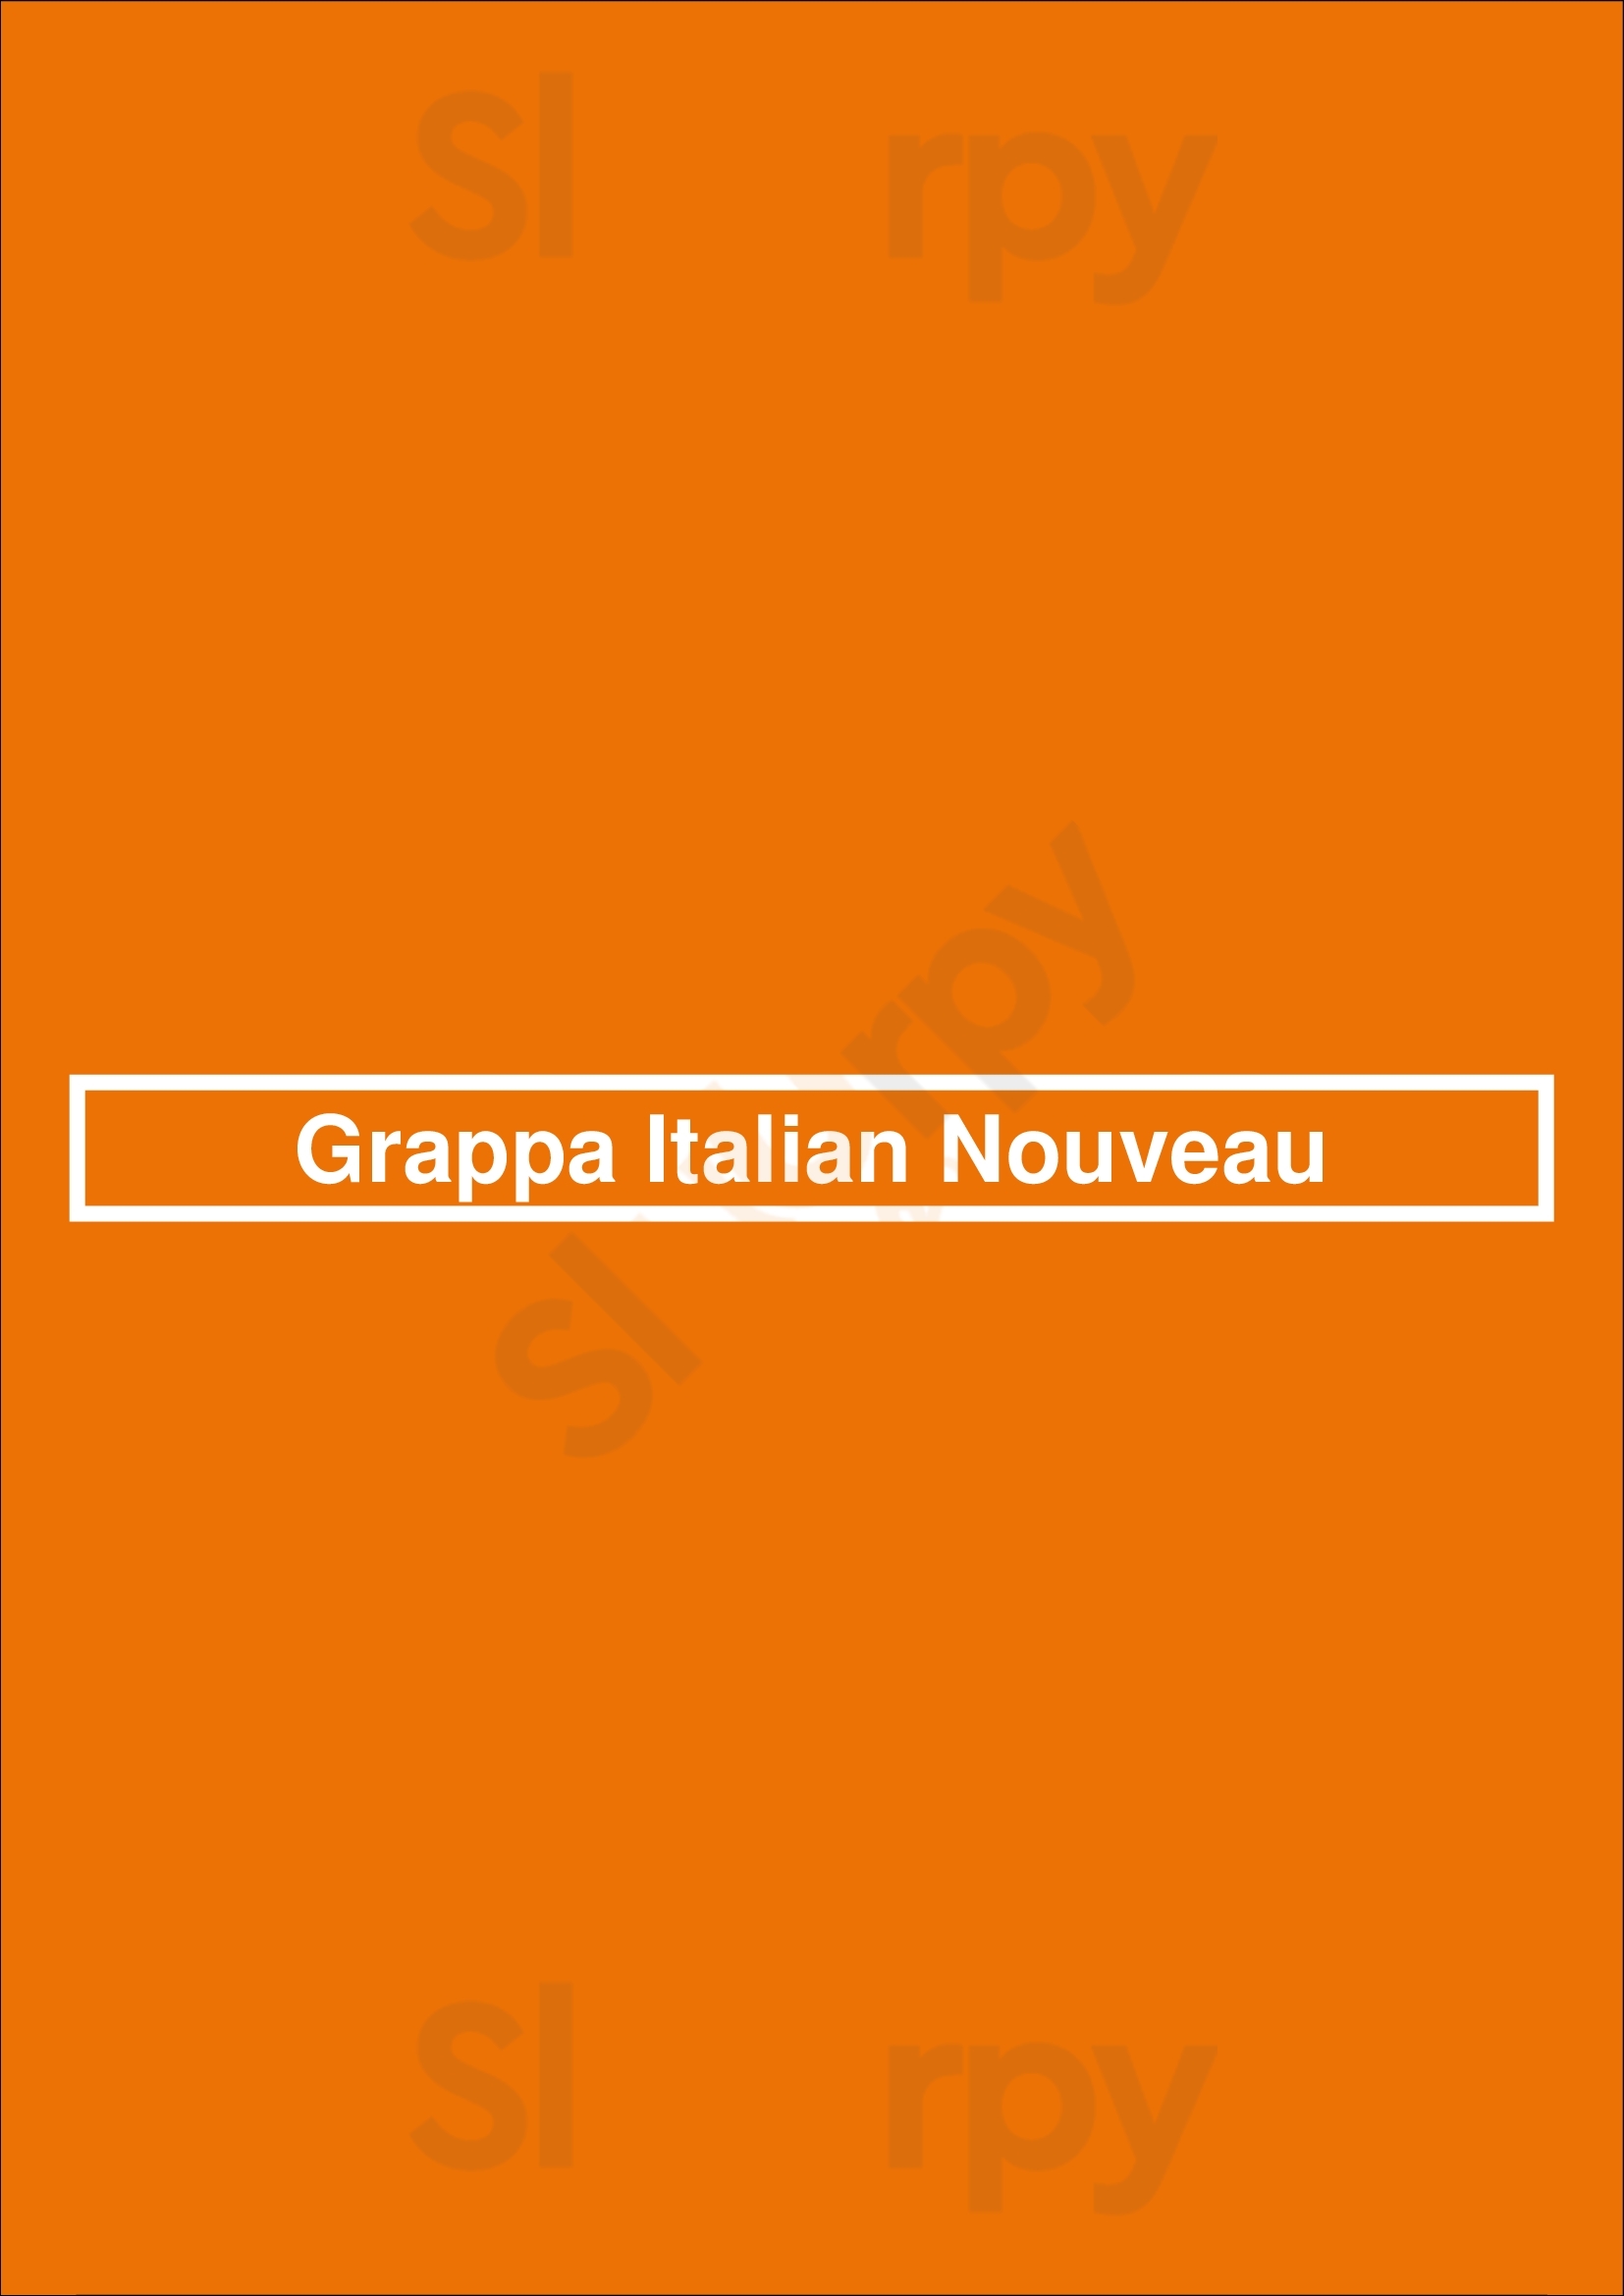 Grappa Italian Nouveau Rochester Menu - 1